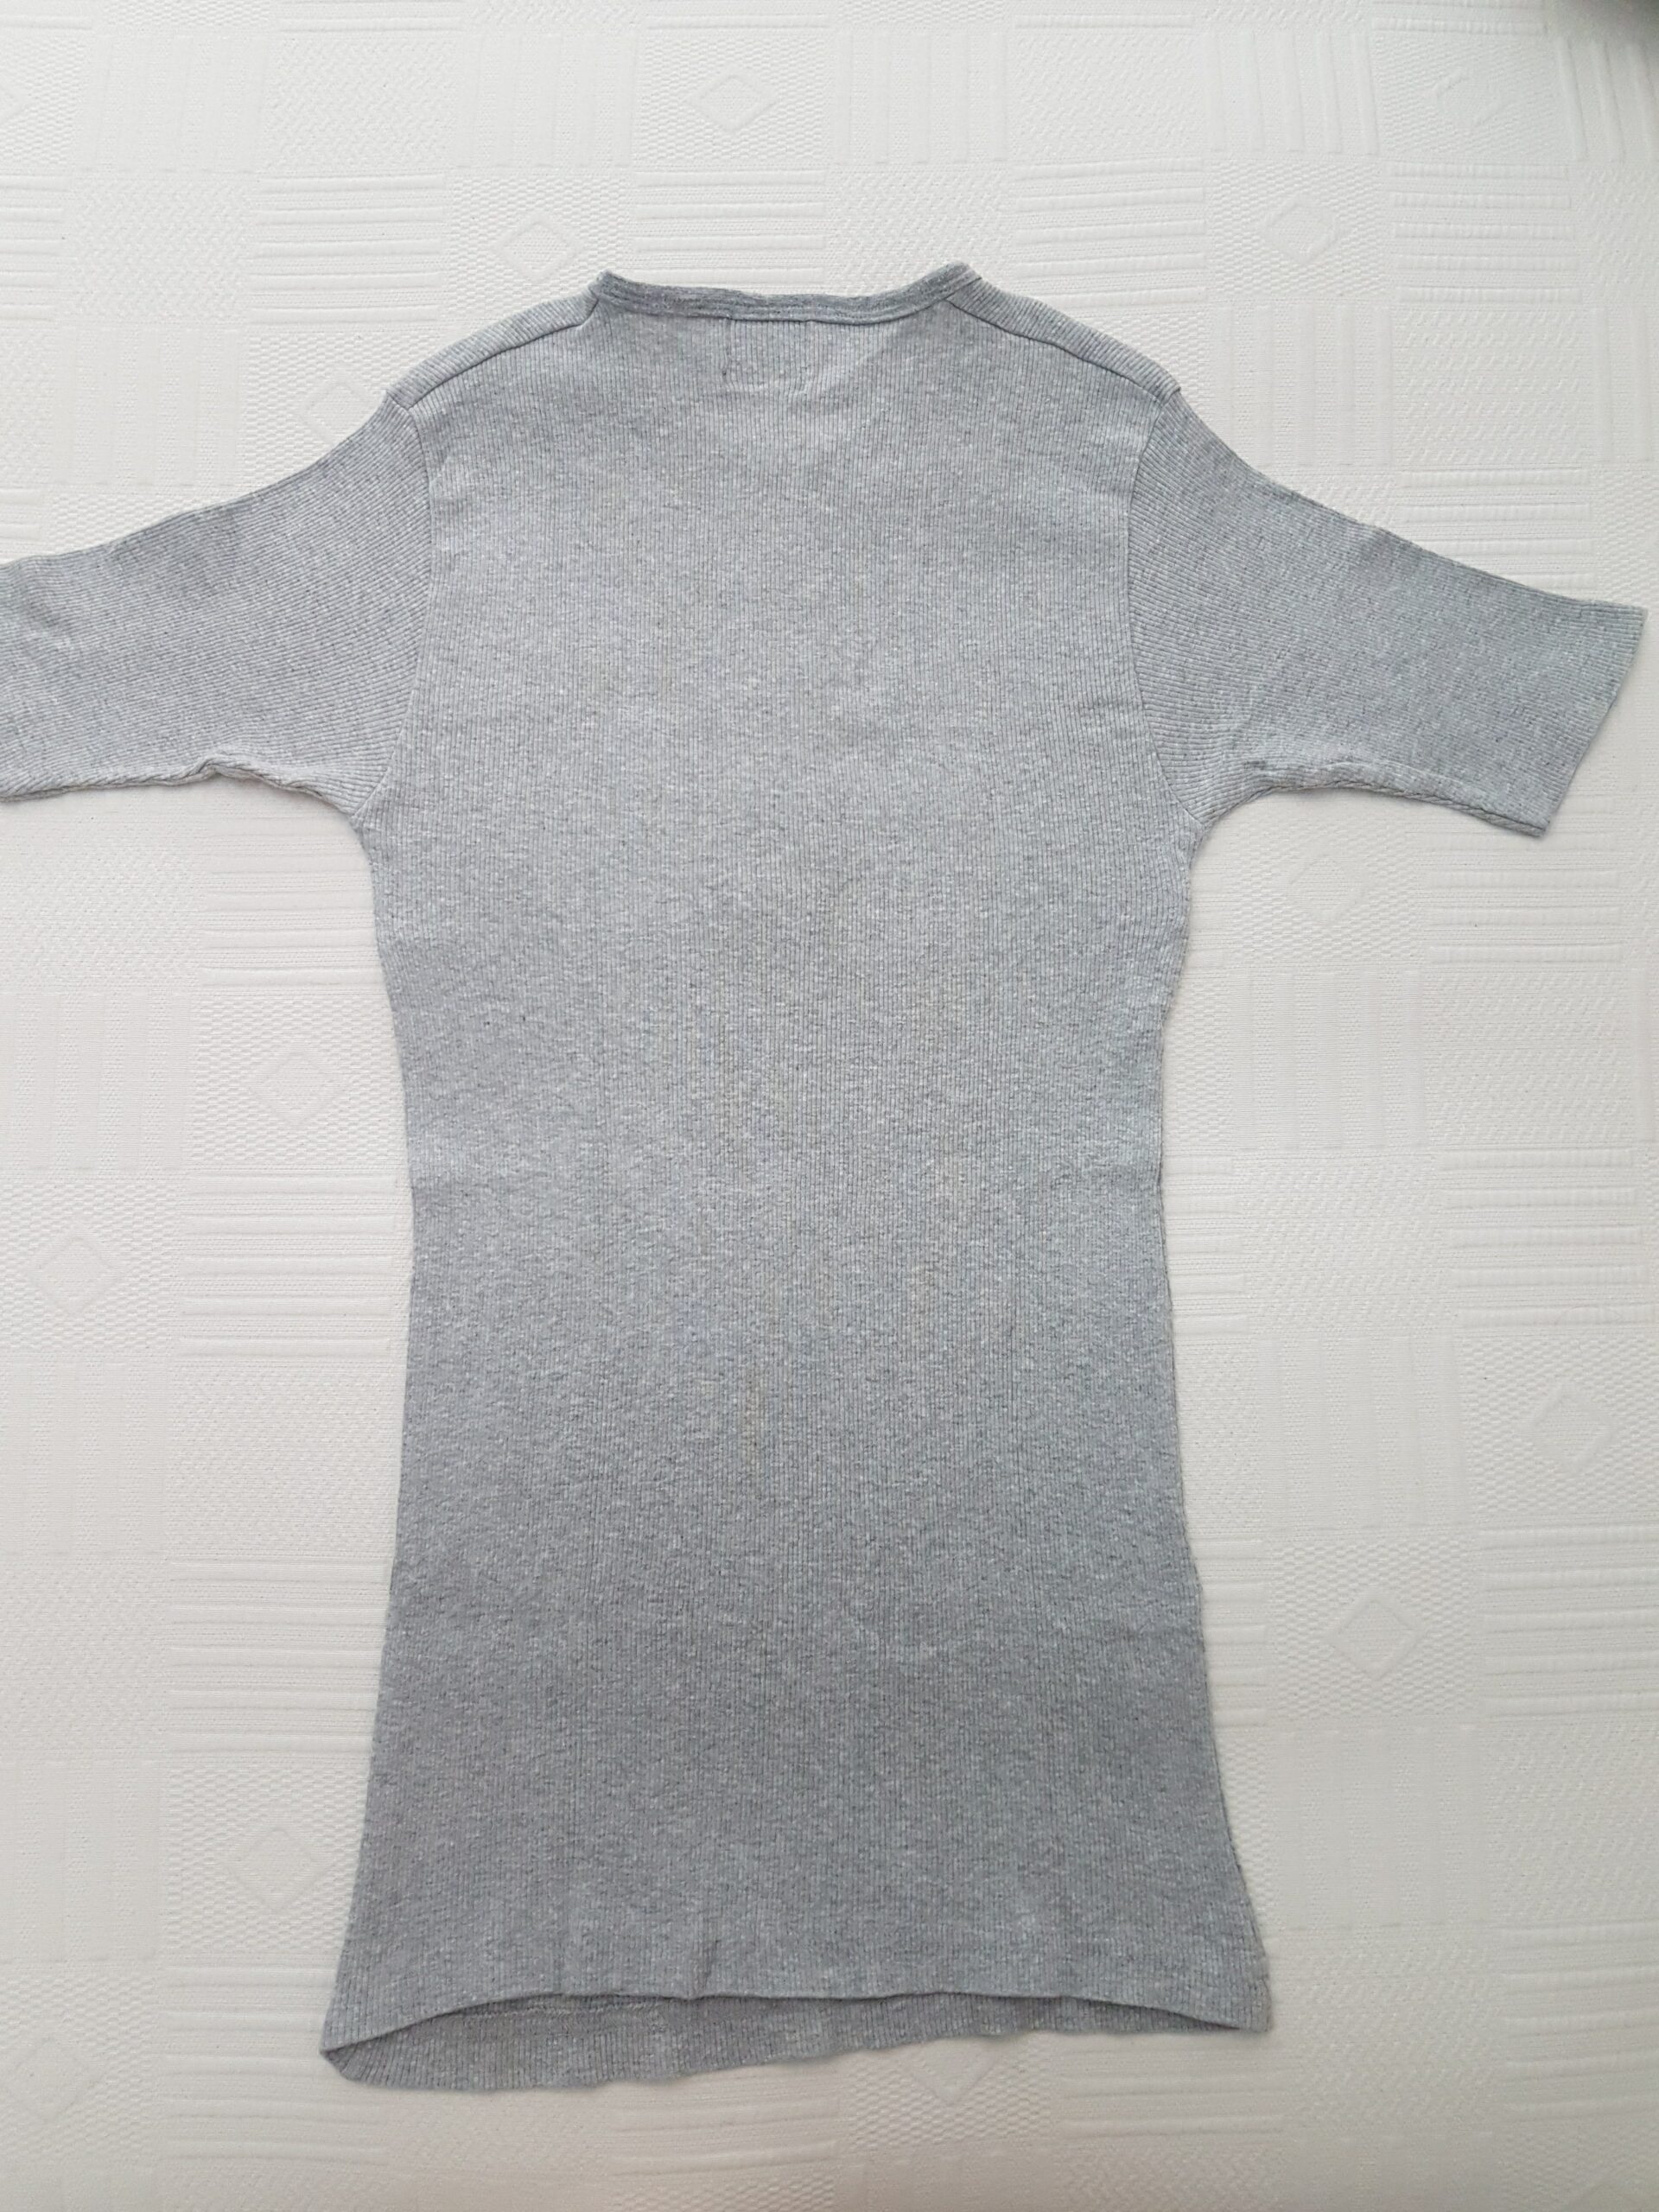 T-shirt Cinza, tamanho M 2